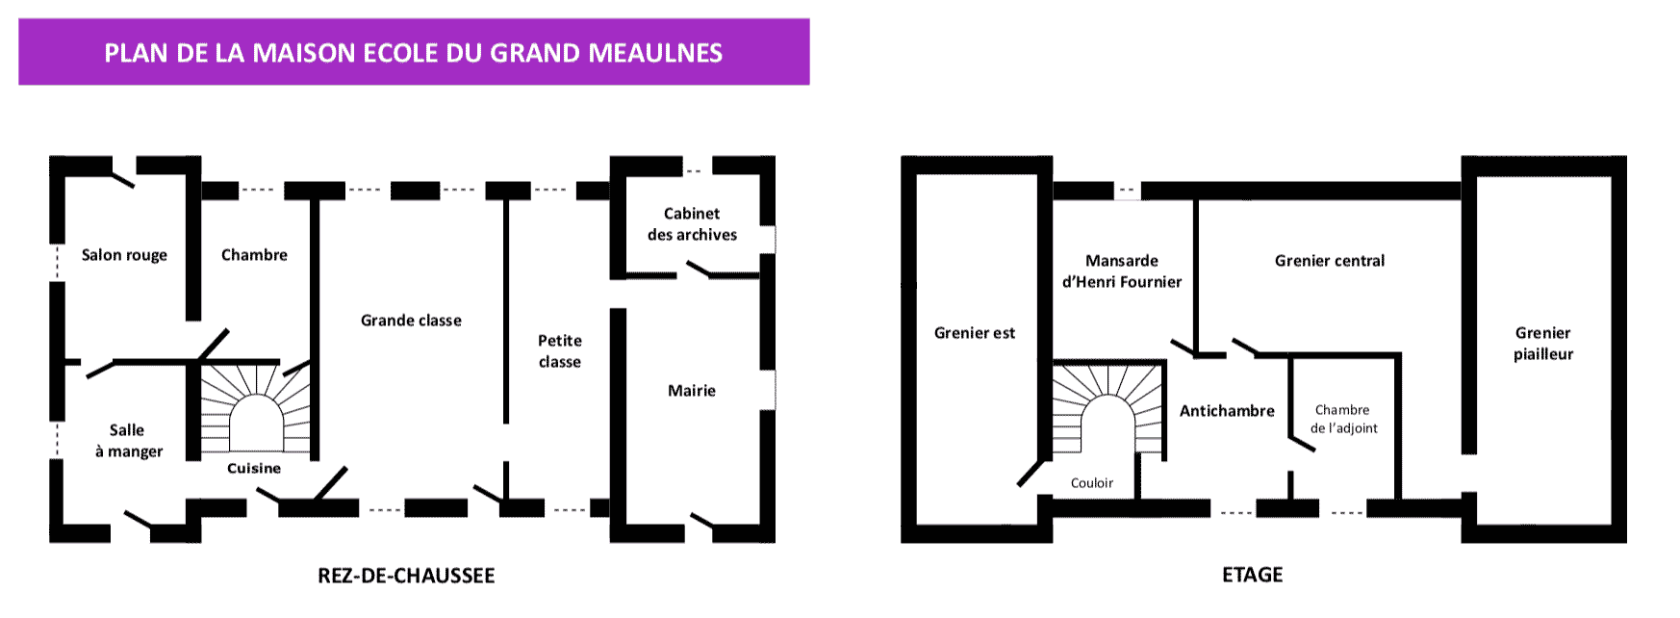 Plan du musée-école du Grand Meaulnes